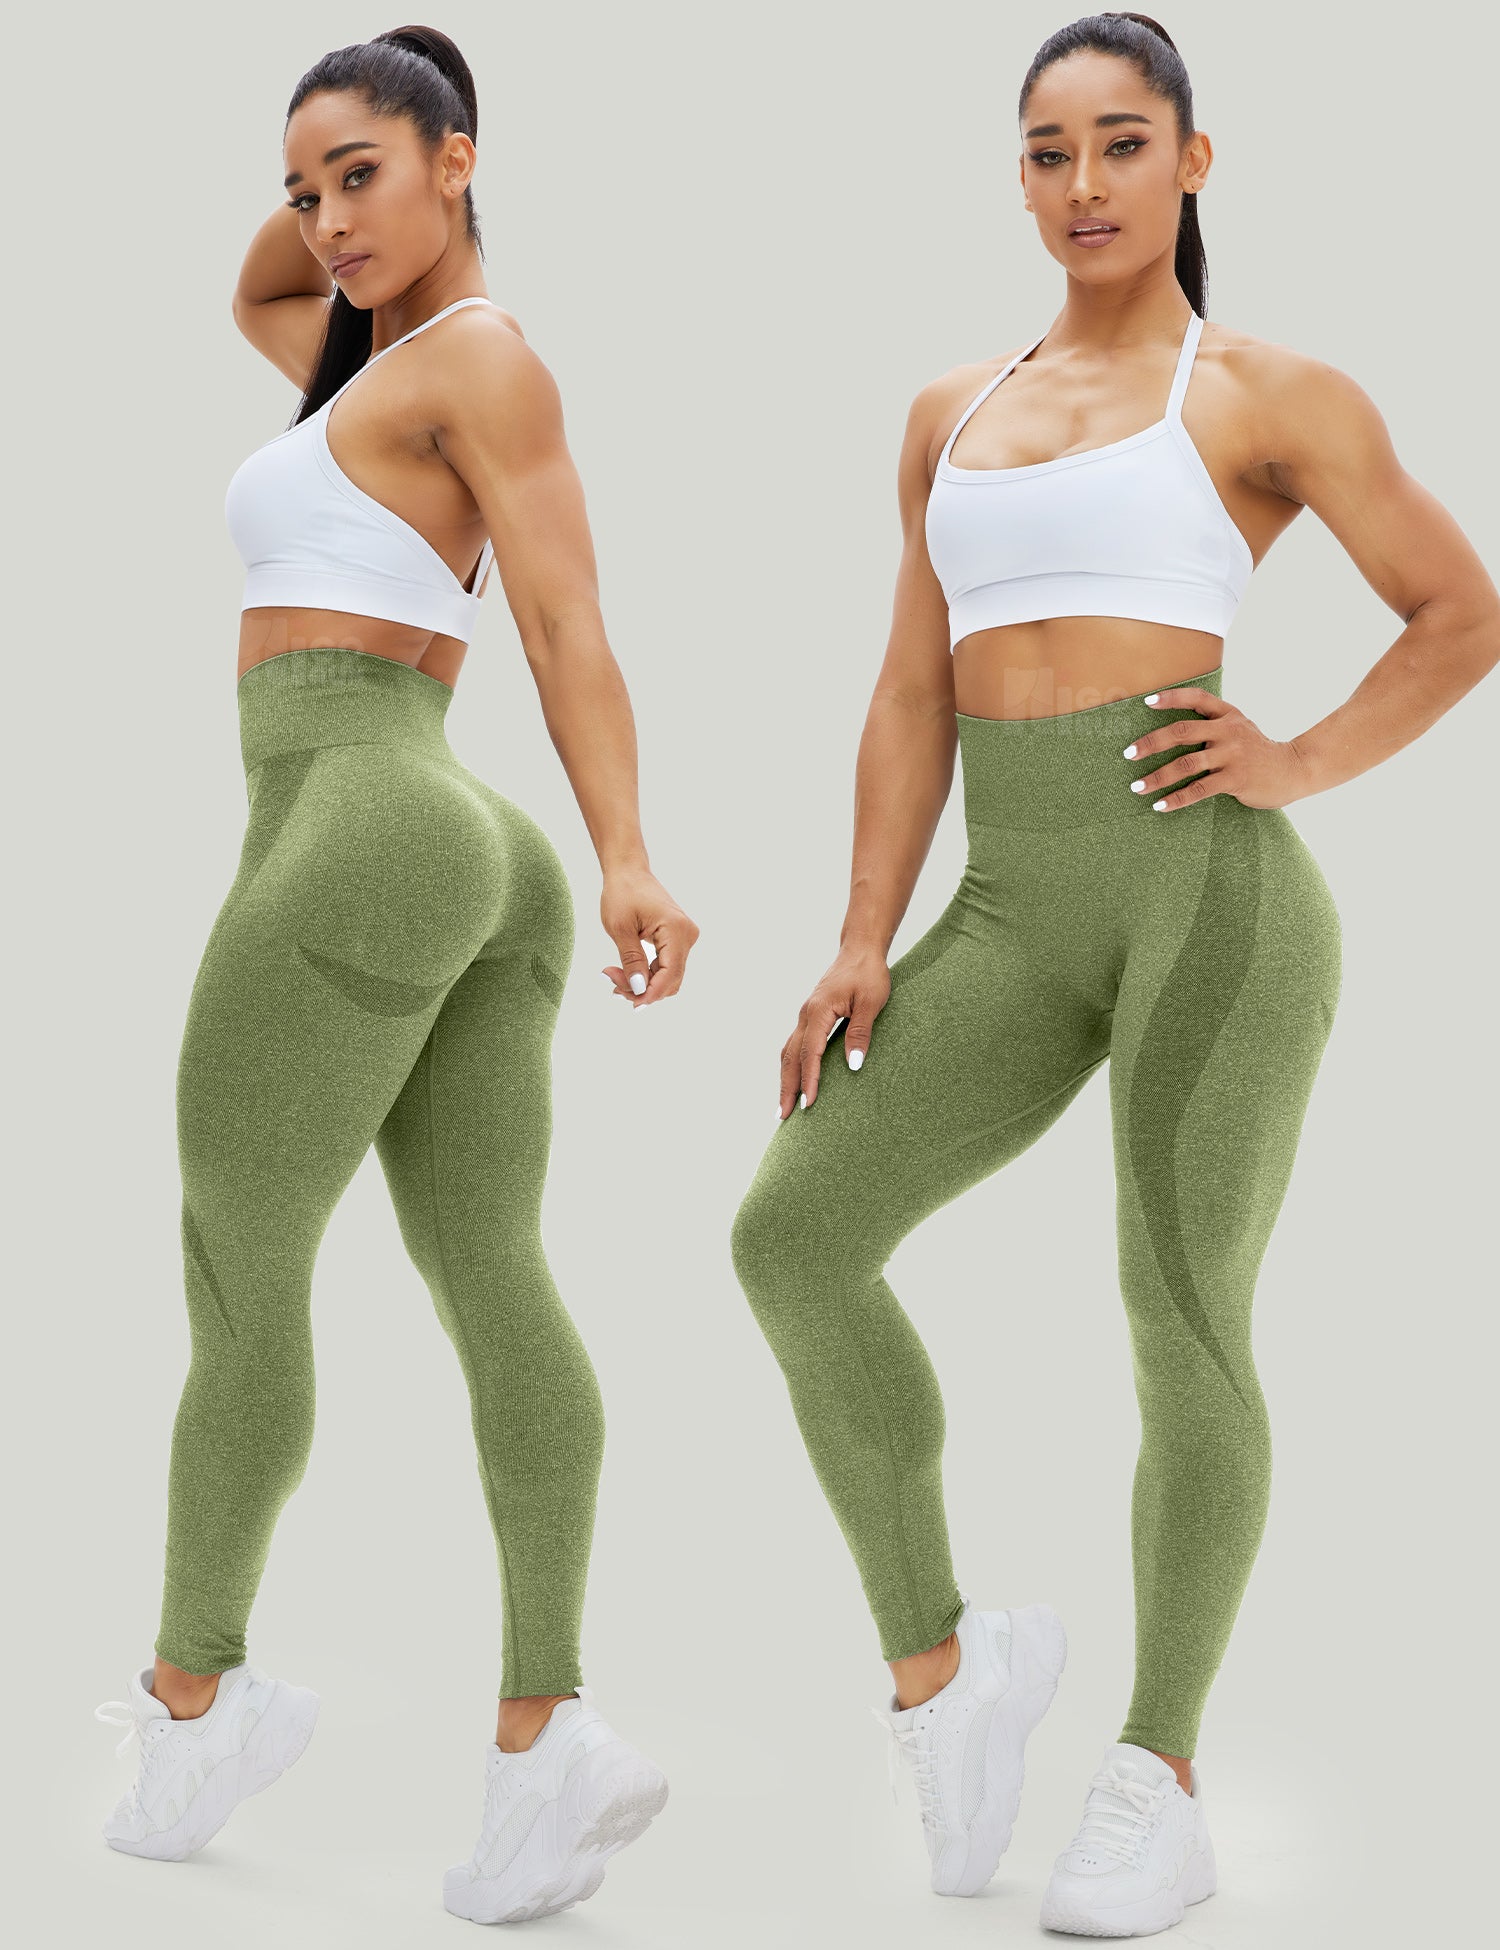 HIGORUN Seamless Workout Leggings for Women Gym Yoga Pants Scrunch